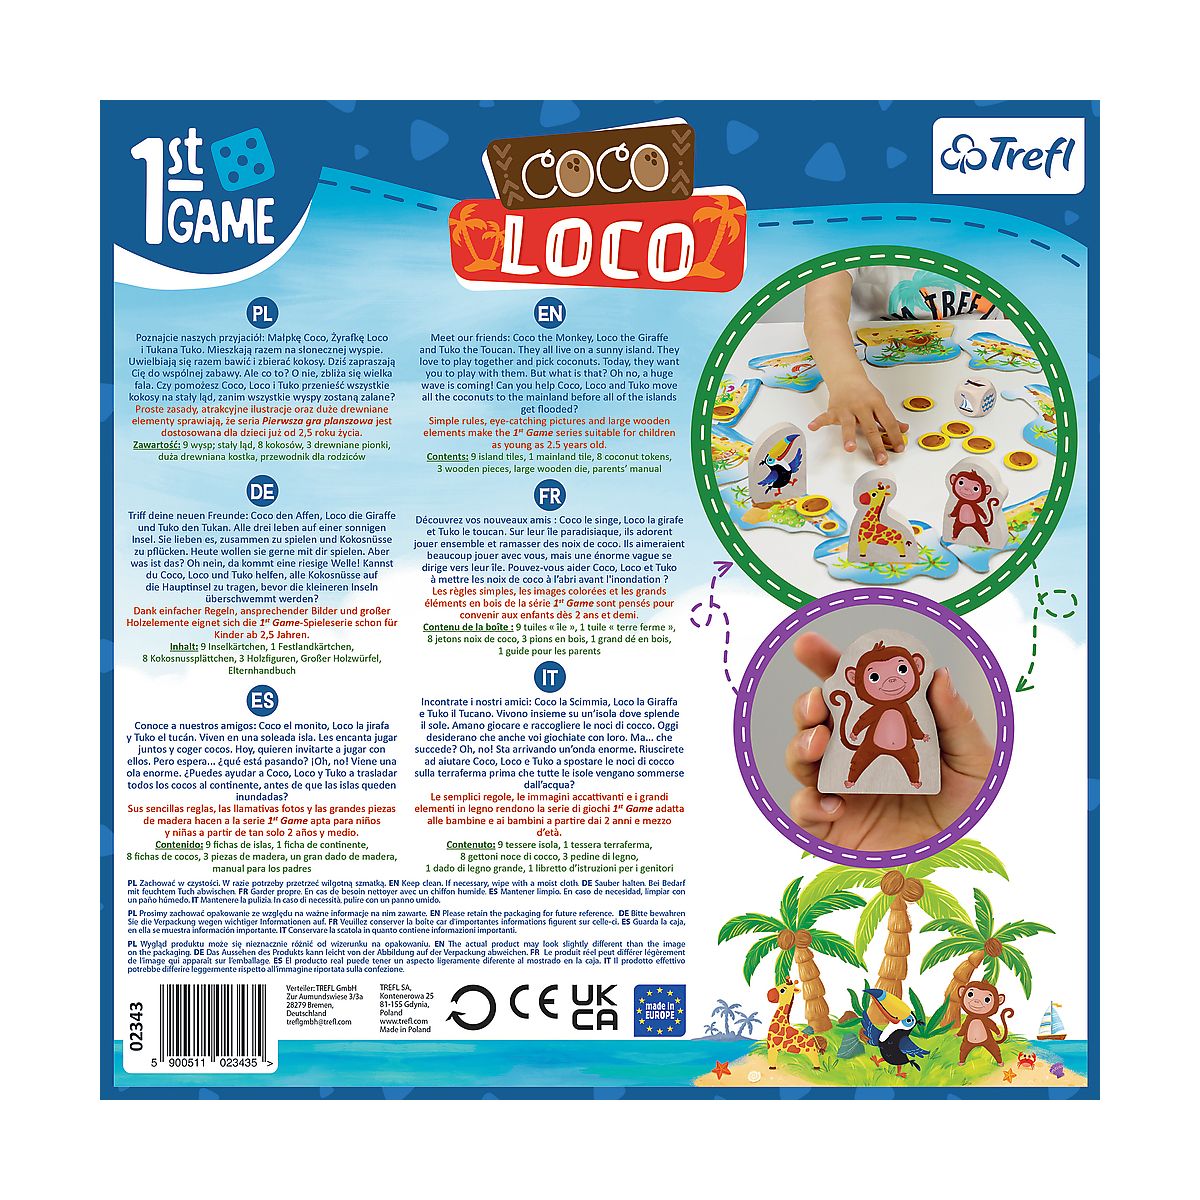 Gra strategiczna Trefl Coco Loco Coco Loco (02343)